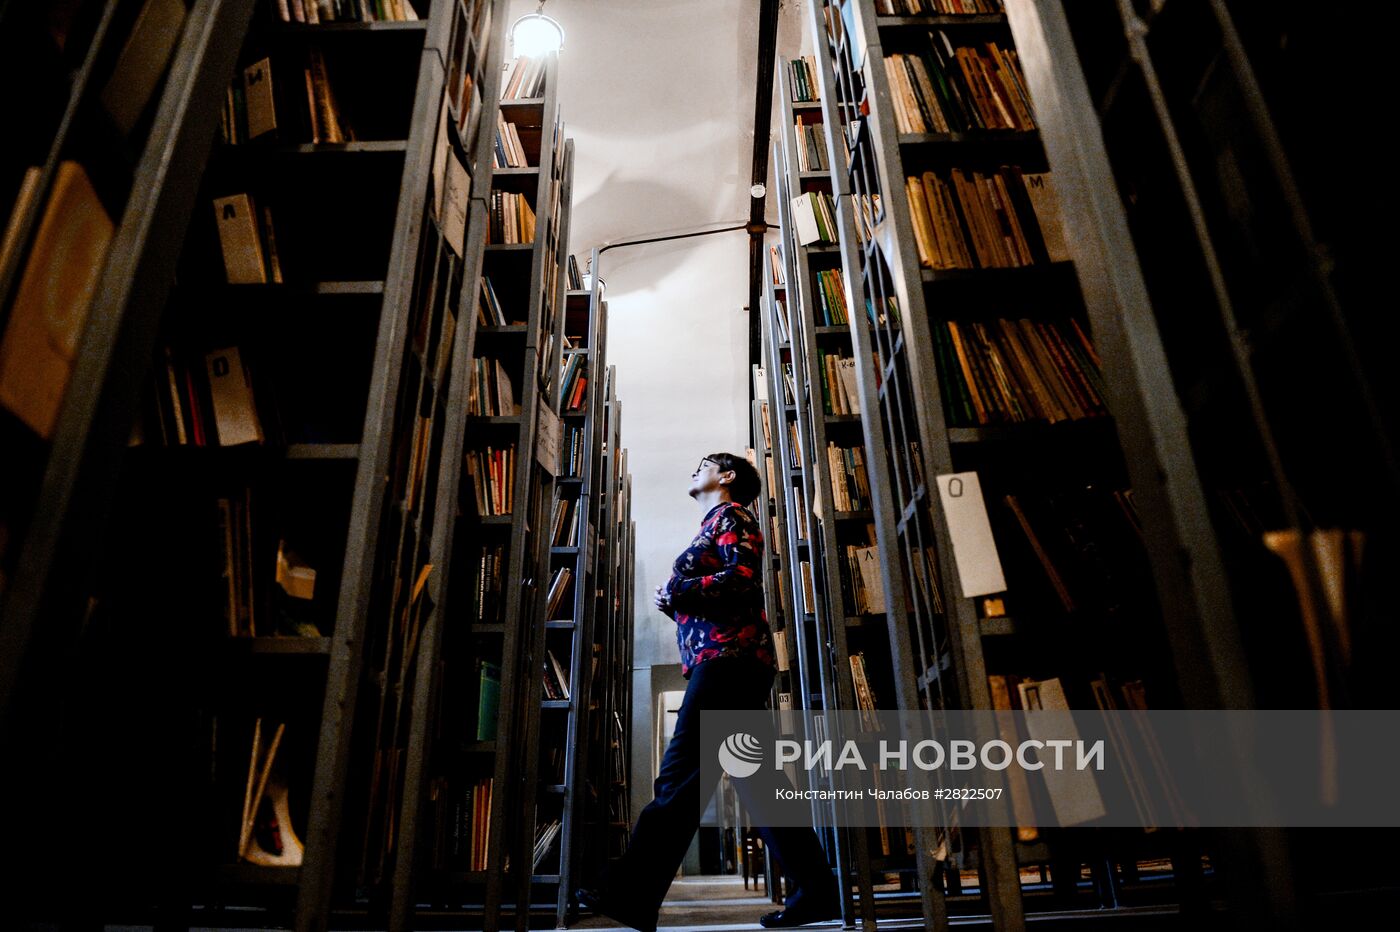 Новгородская областная универсальная научная библиотека